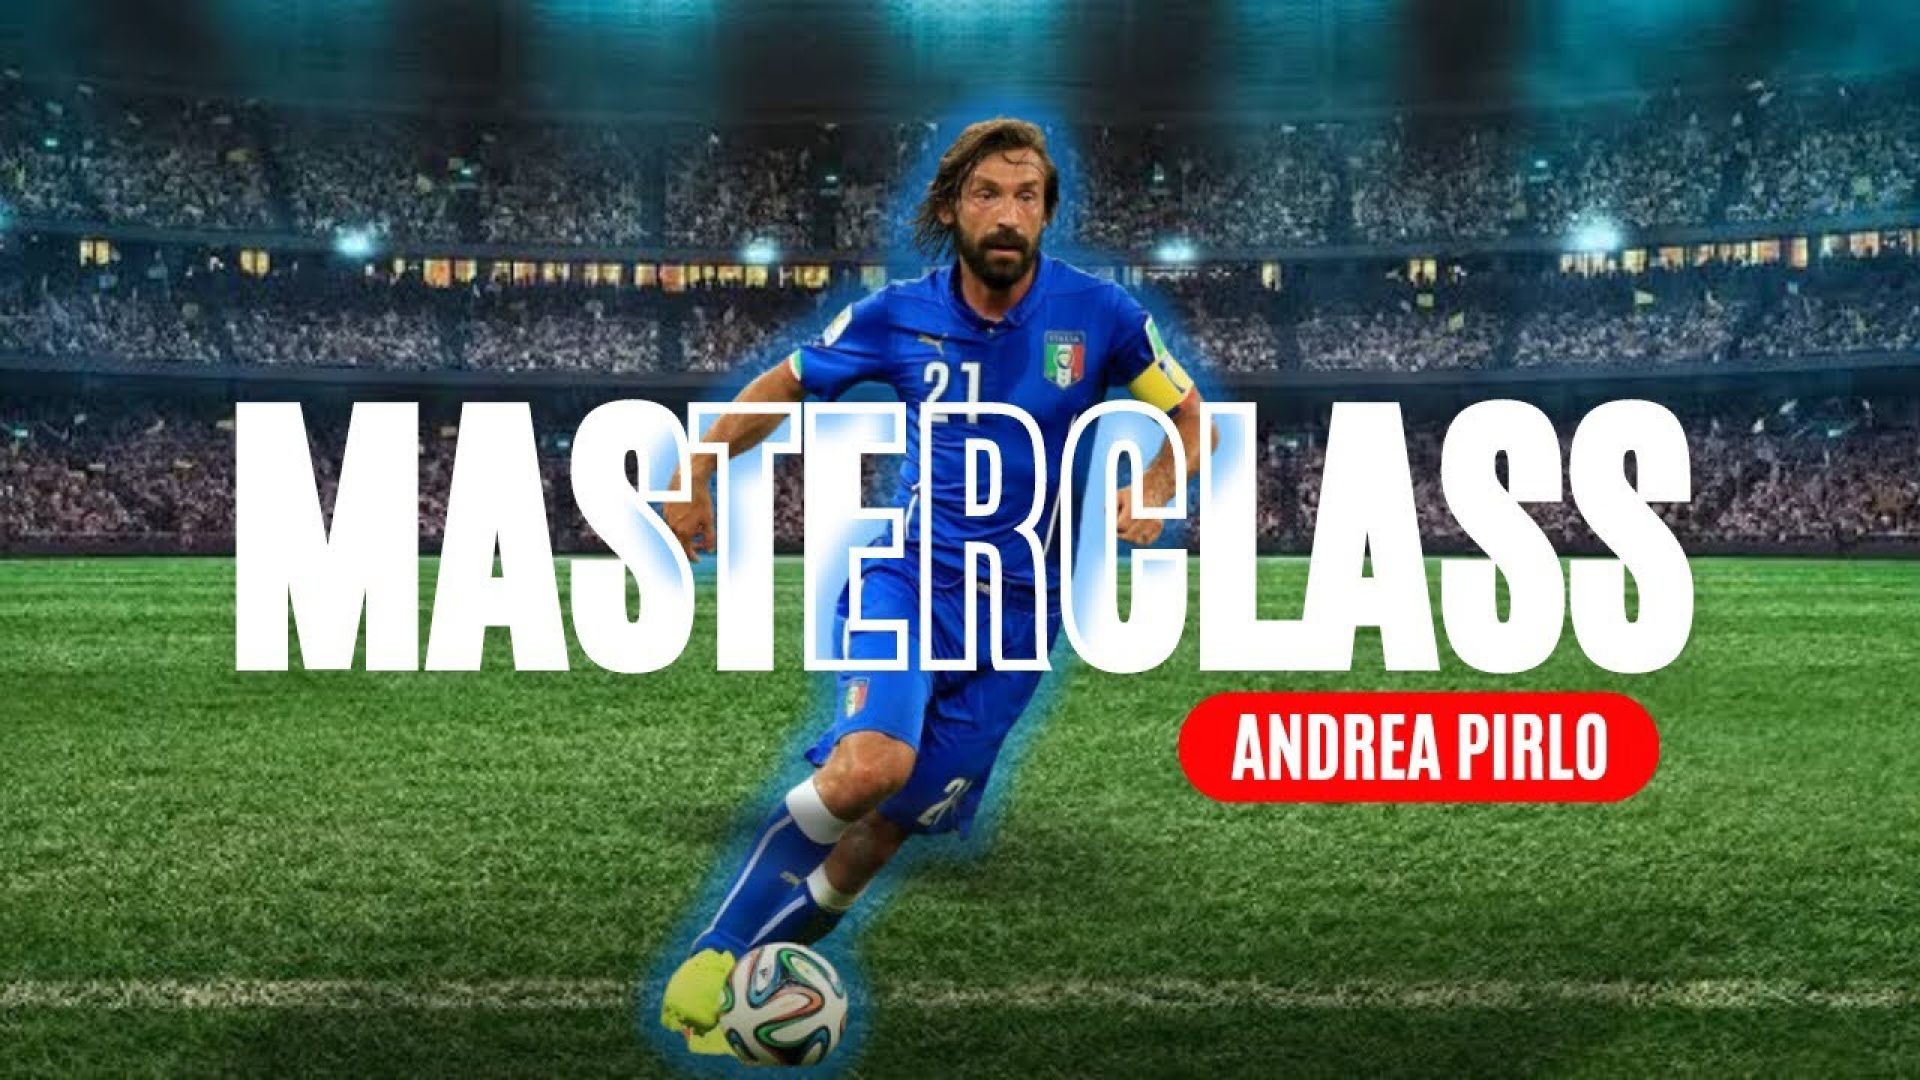 Andrea Pirlo Masterclass in Close Control & Ball Mastery